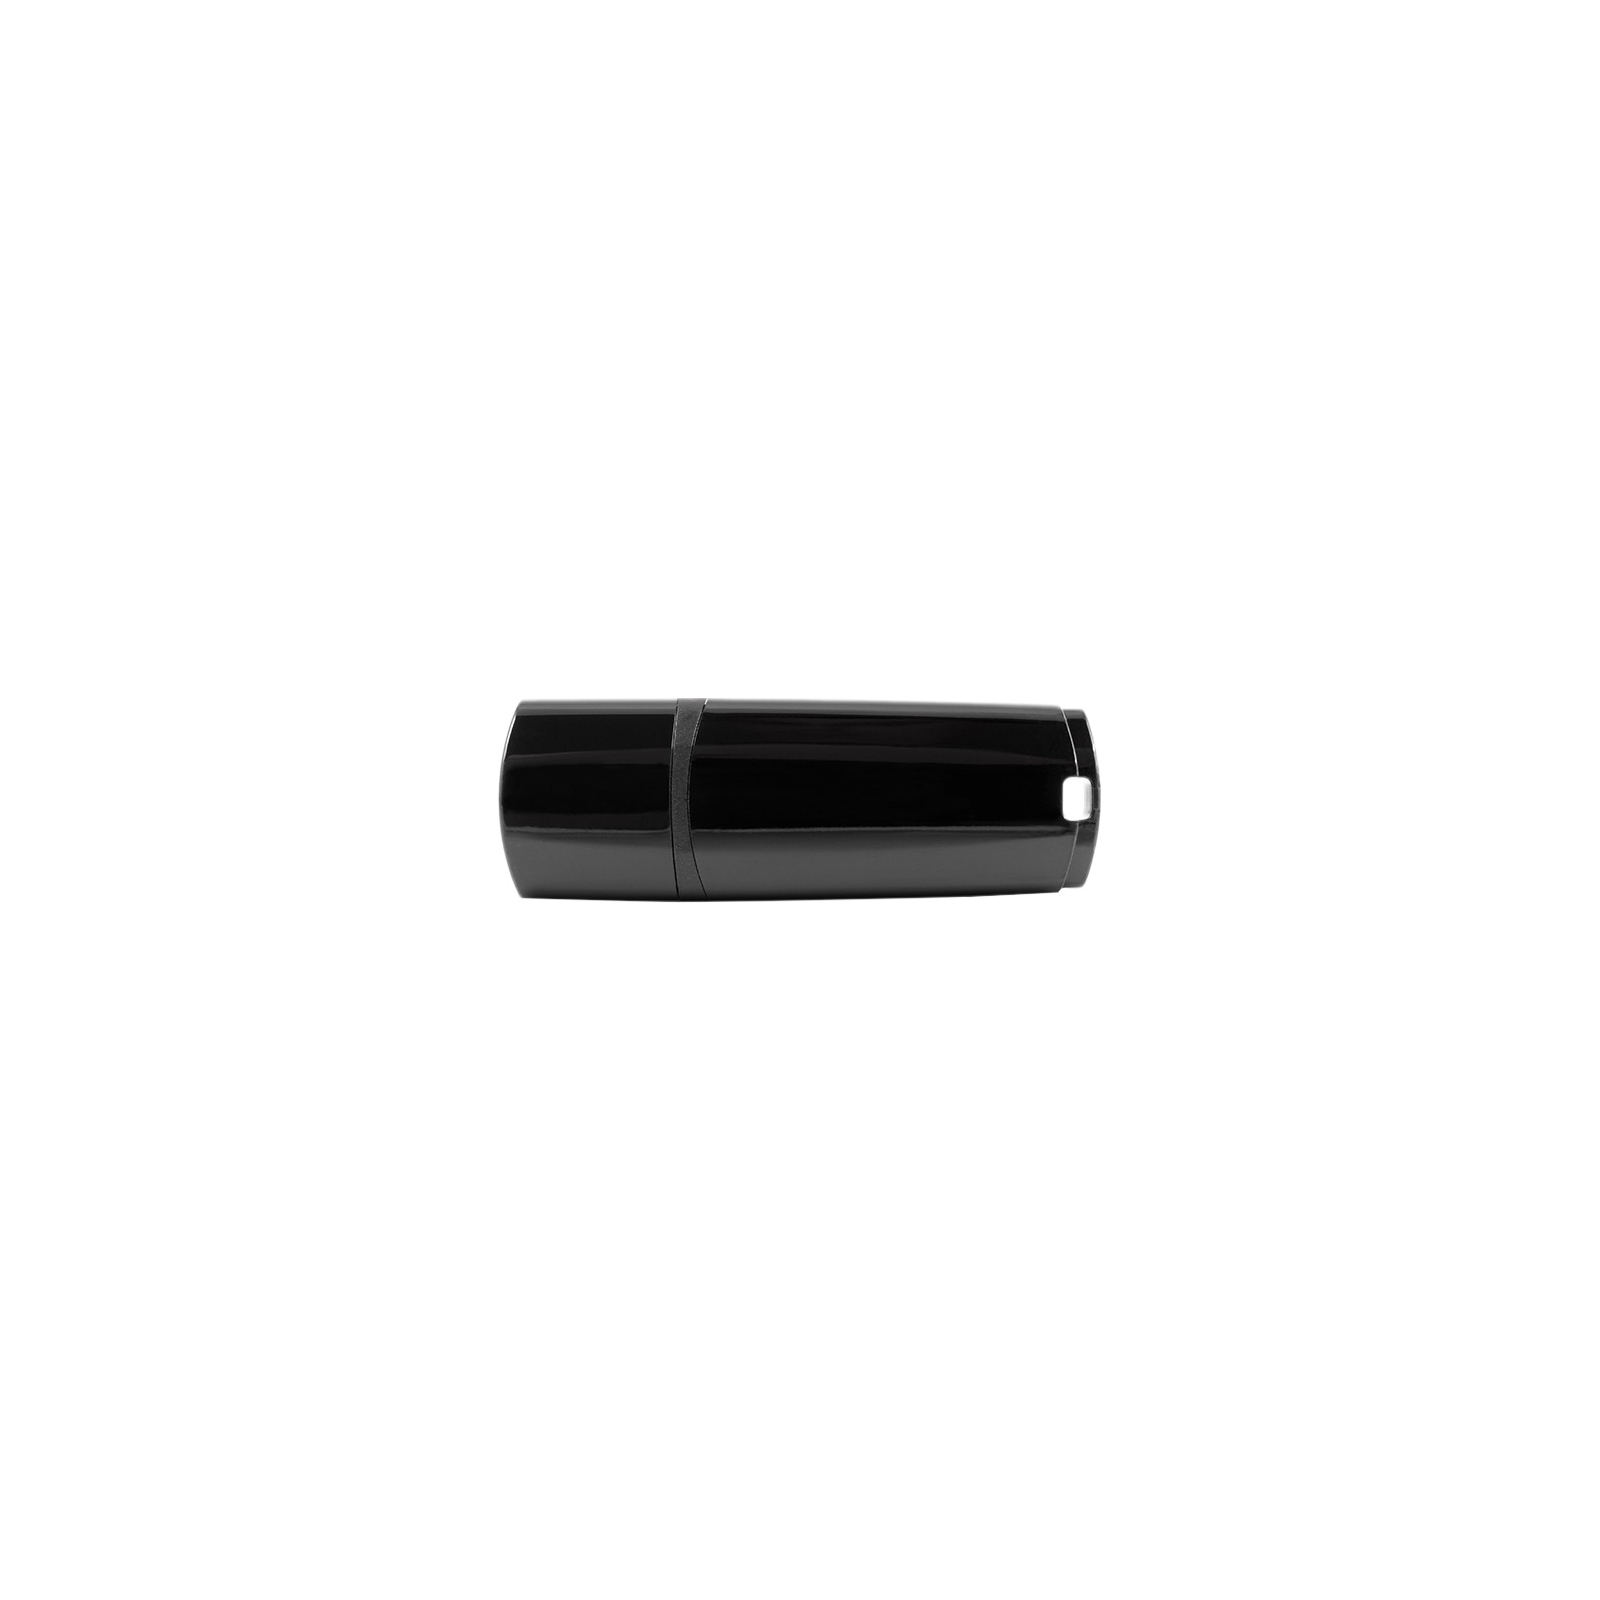 USB флеш накопичувач Goodram 64GB UMM3 Mimic Black USB 3.0 (UMM3-0640K0R11)